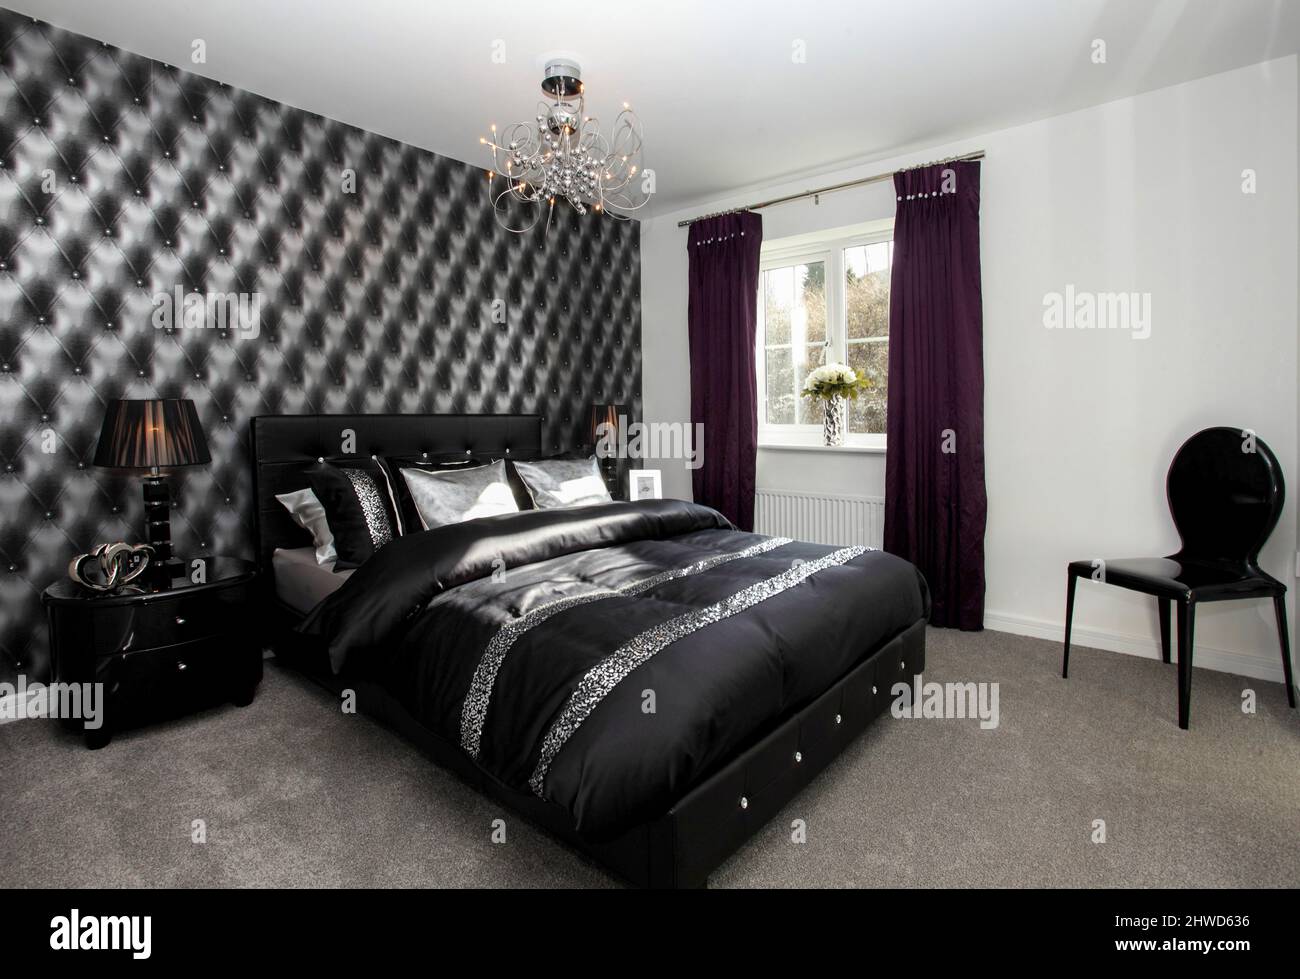 Dormitorio blanco y negro dramático, papel pintado en efecto acolchado negro, sábanas satinadas negras almohadas. Foto de stock